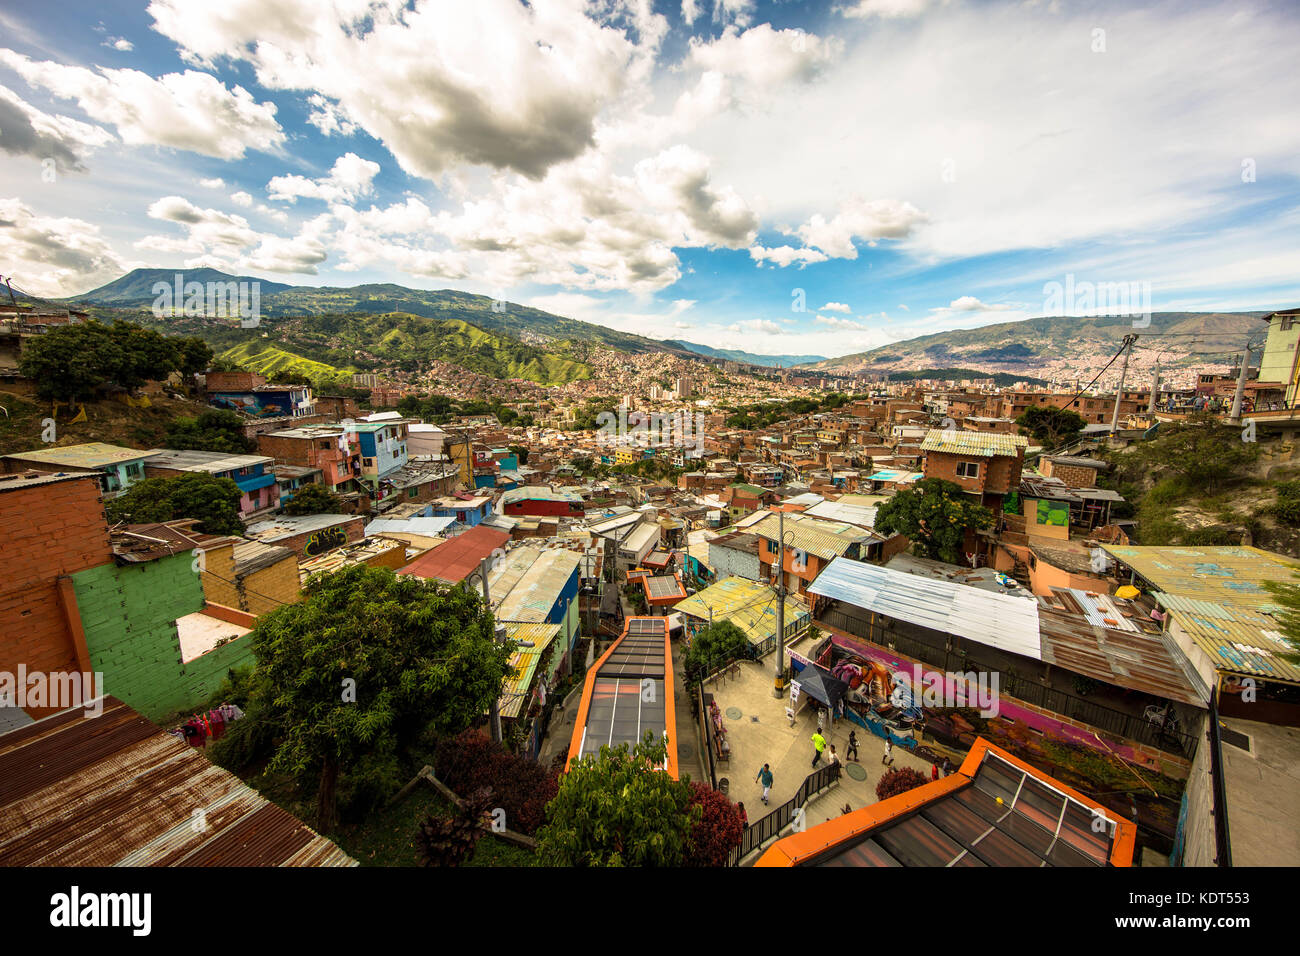 Comuna 13, im Westen von Medellin befindet, hat einen langen Weg zurückgelegt, da es eines der gefährlichsten Teile der Stadt angesehen wurde. Stockfoto